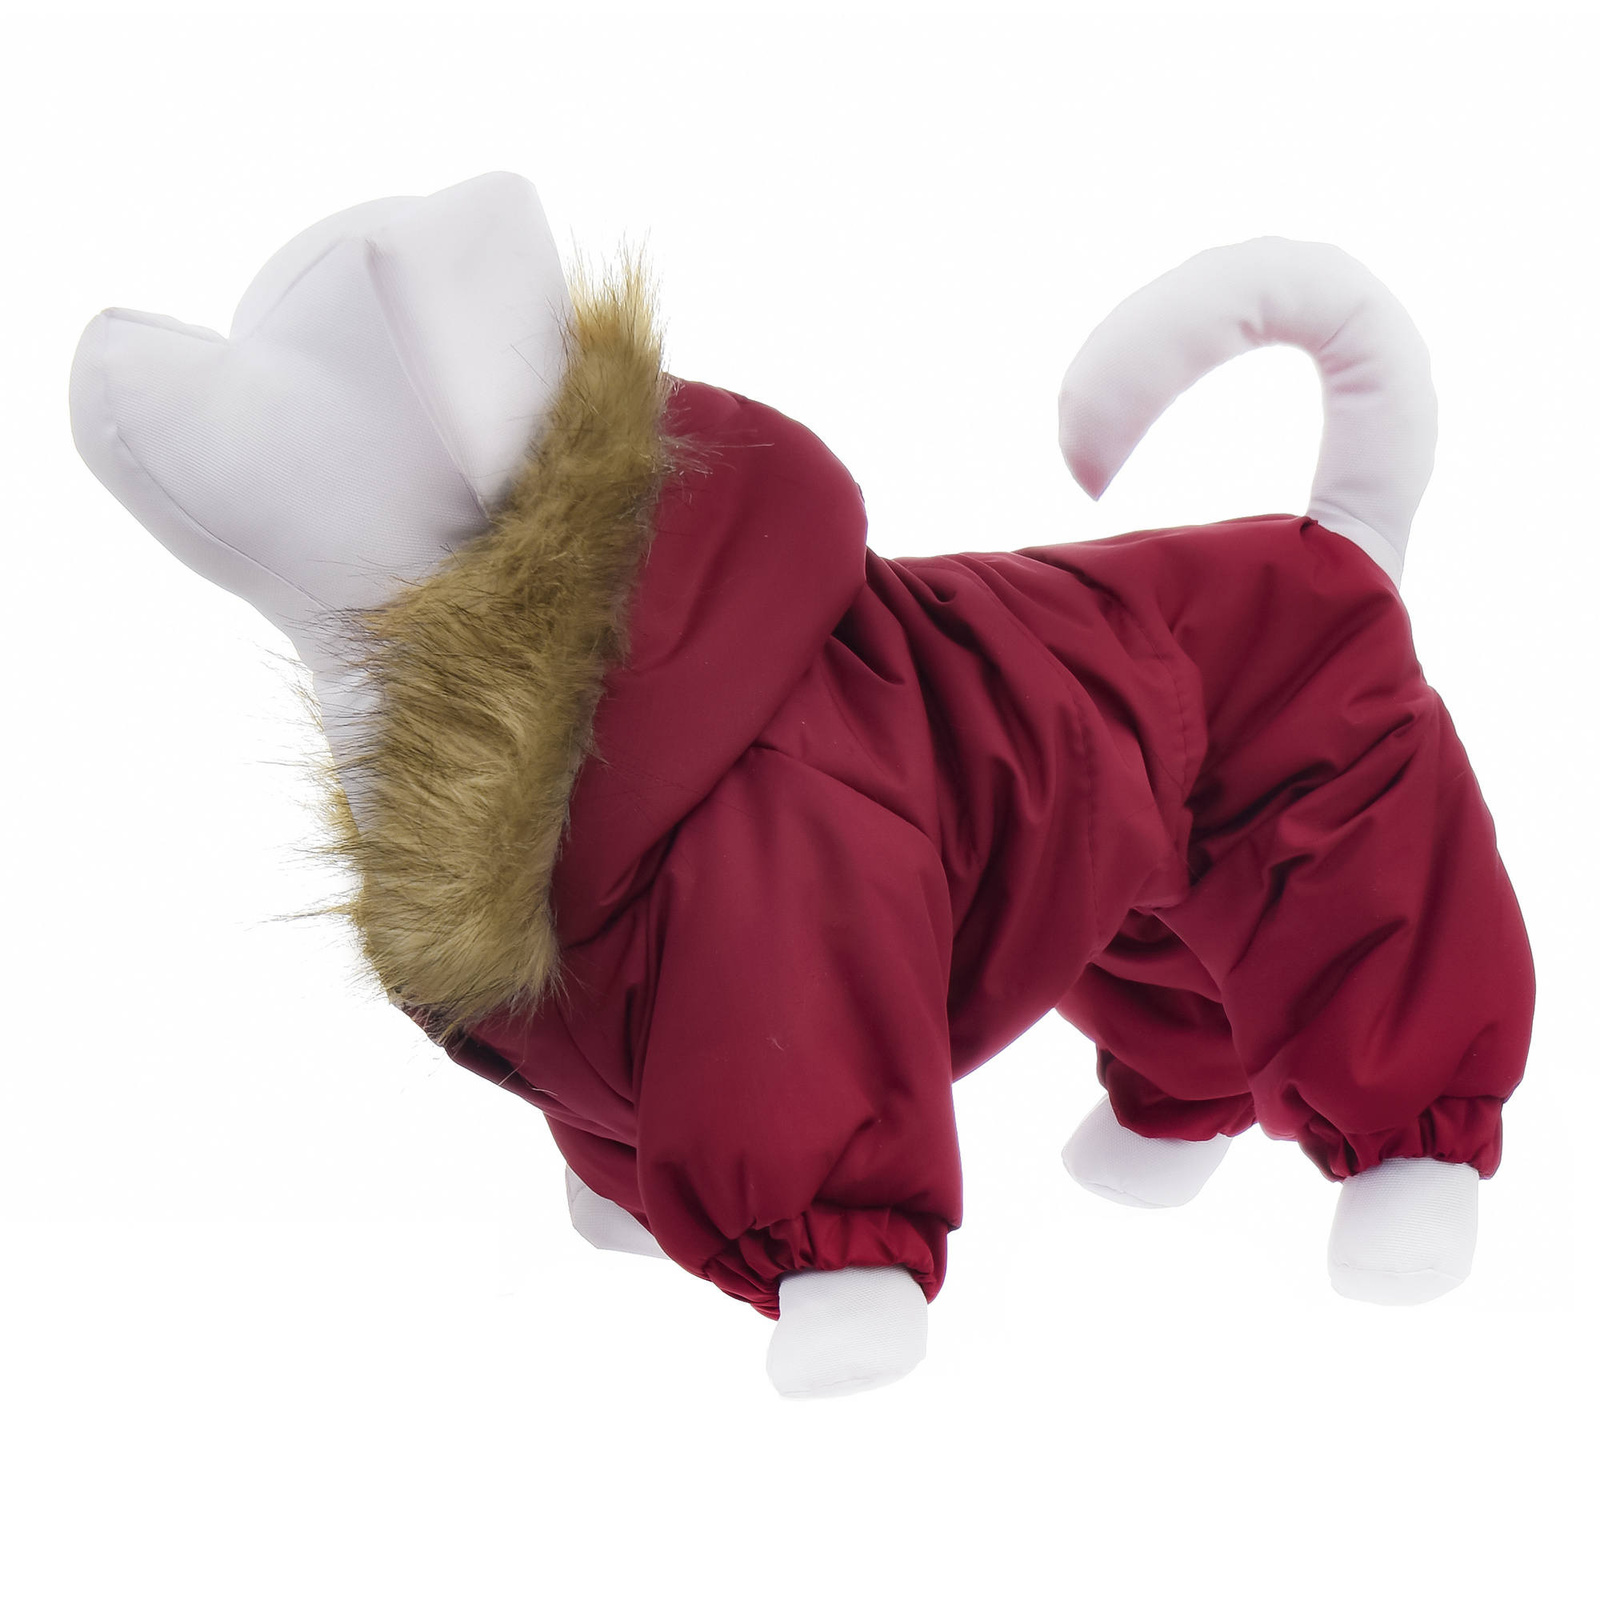 Yami-Yami одежда Yami-Yami одежда комбинезон для собак с капюшоном, на меховой подкладке, бордовый (100 г) yami yami одежда yami yami одежда комбинезон для собак с капюшоном на меховой подкладке бордовый 100 г